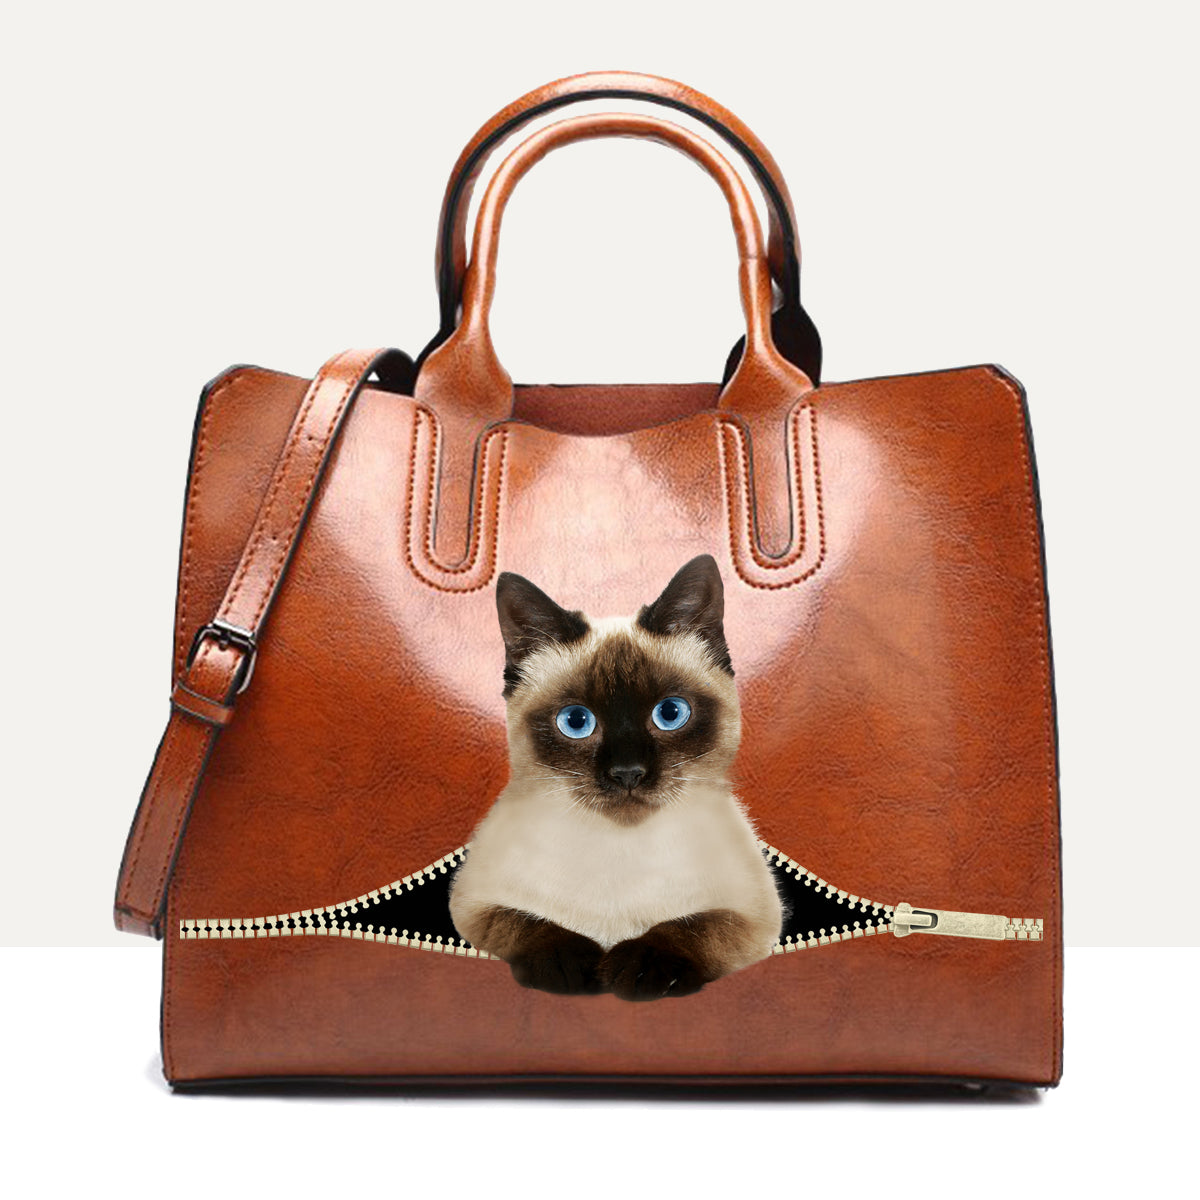 Ihr bester Begleiter – Siamese Cat Luxury Handbag V1